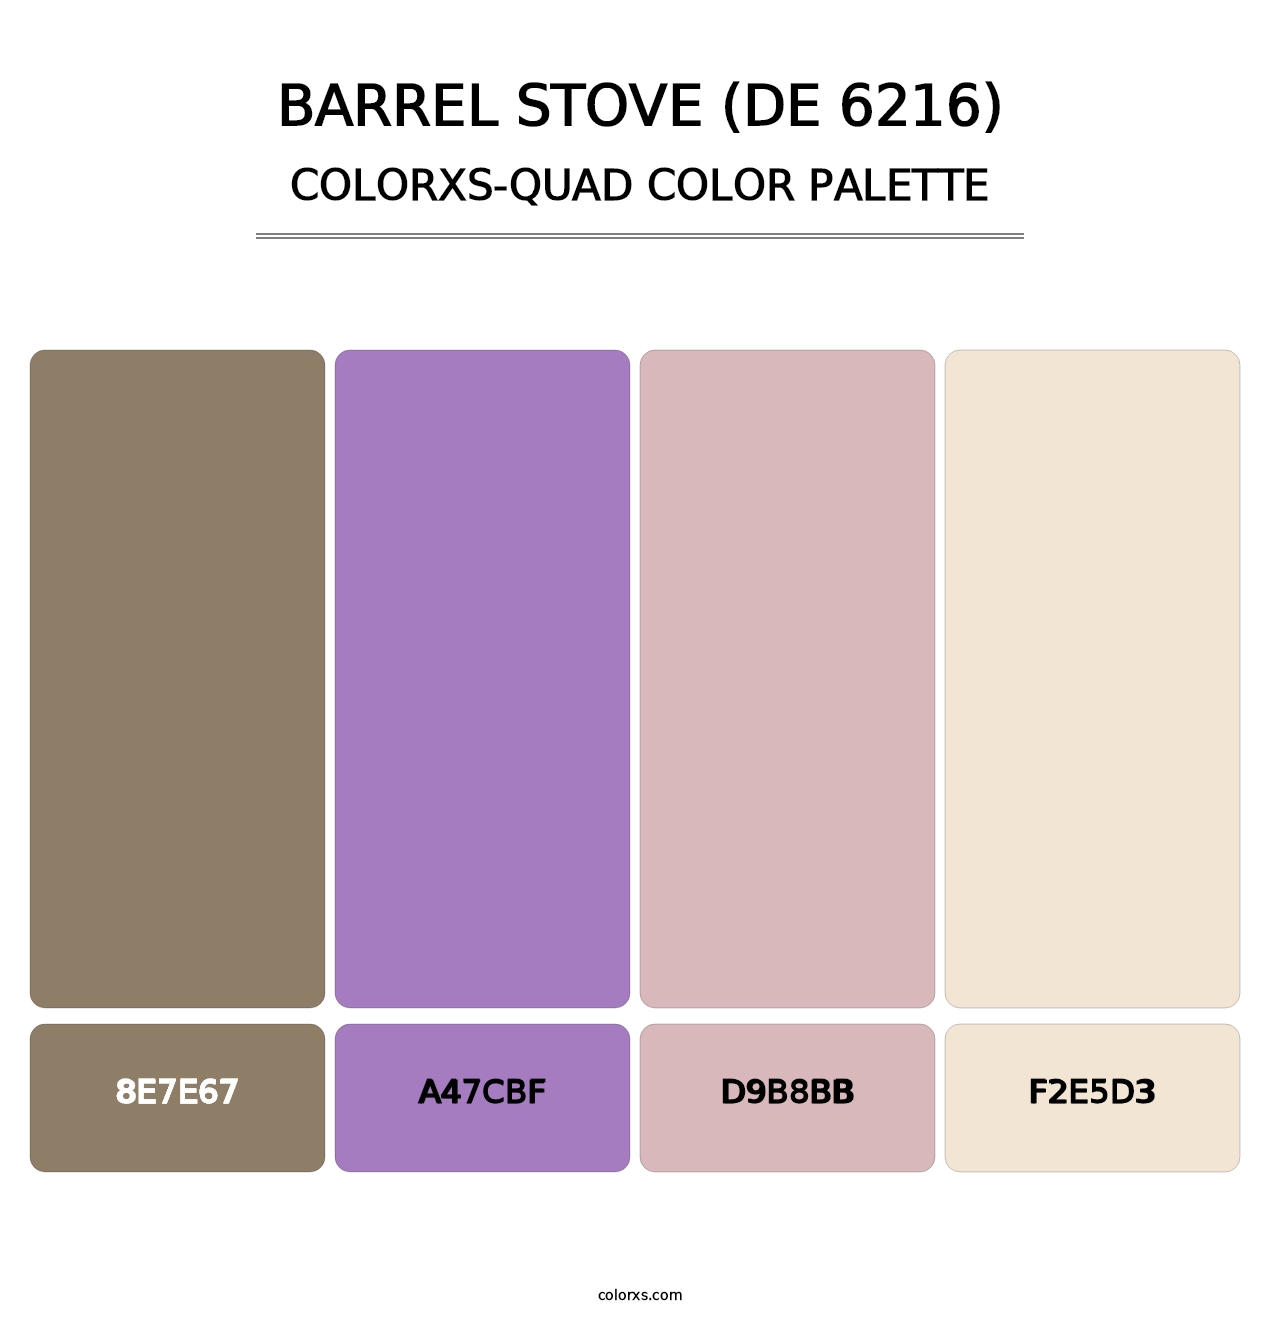 Barrel Stove (DE 6216) - Colorxs Quad Palette